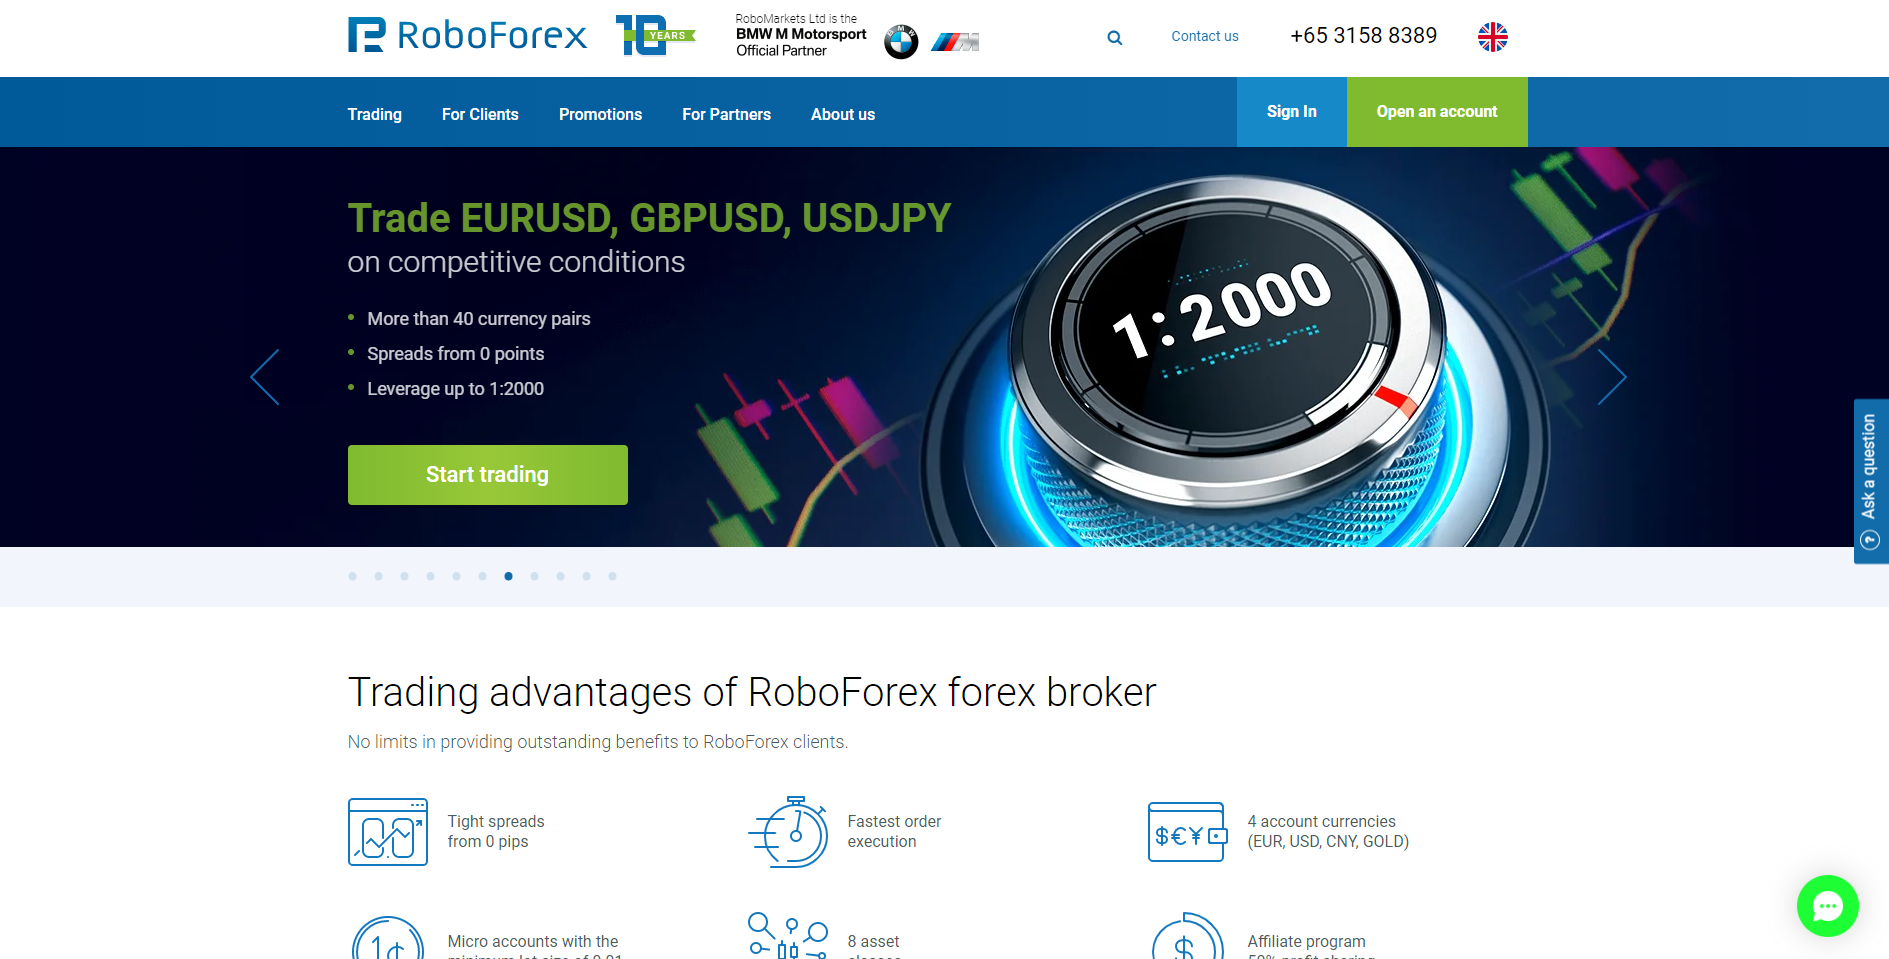 Η επίσημη ιστοσελίδα του μεσίτη forex RoboForex